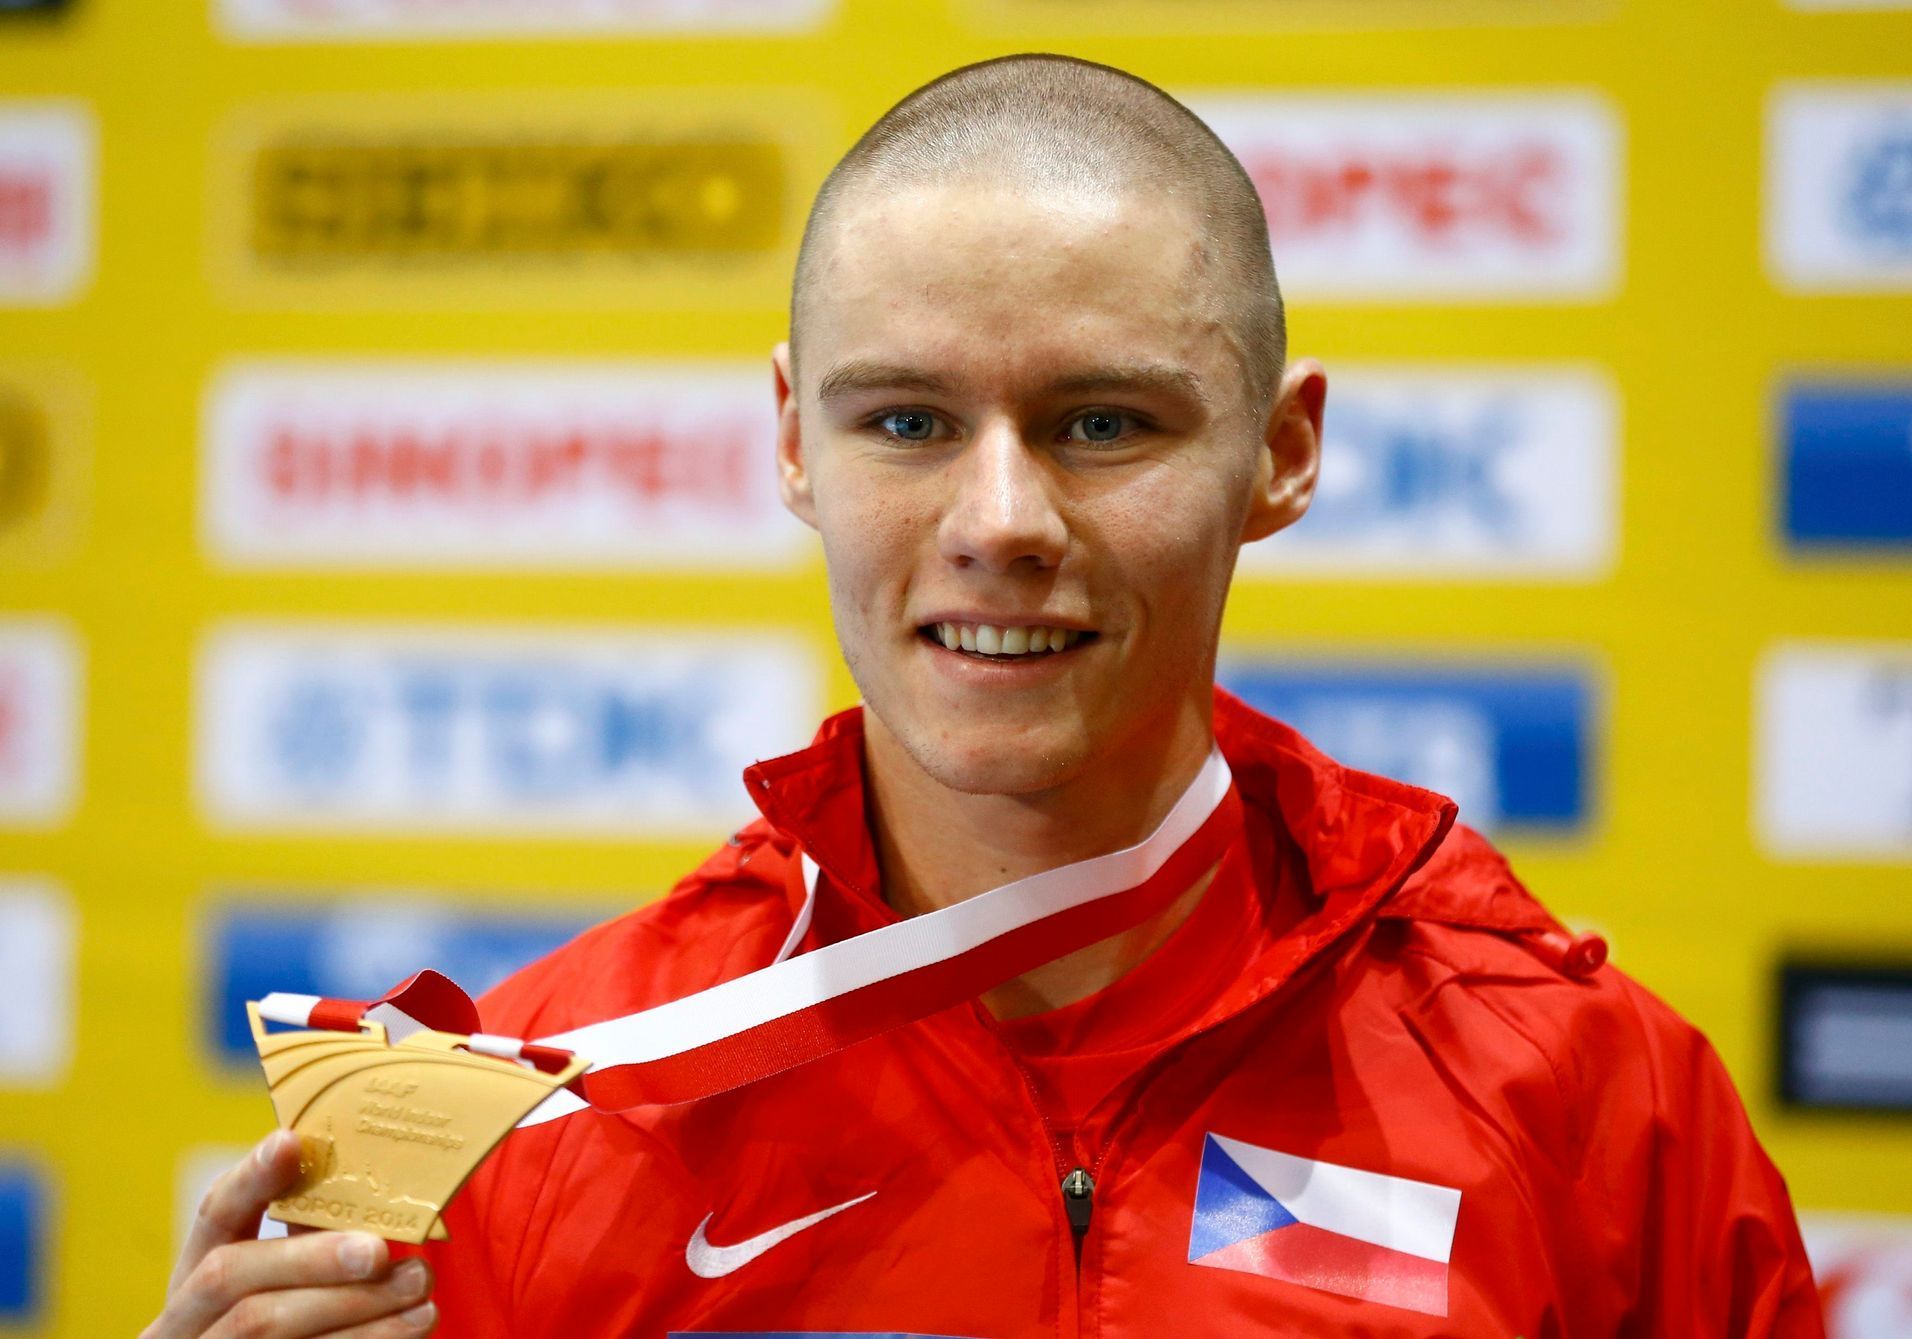 HMS Sopoty 2014, 400 m: Pavel Maslák se zlatou medailí